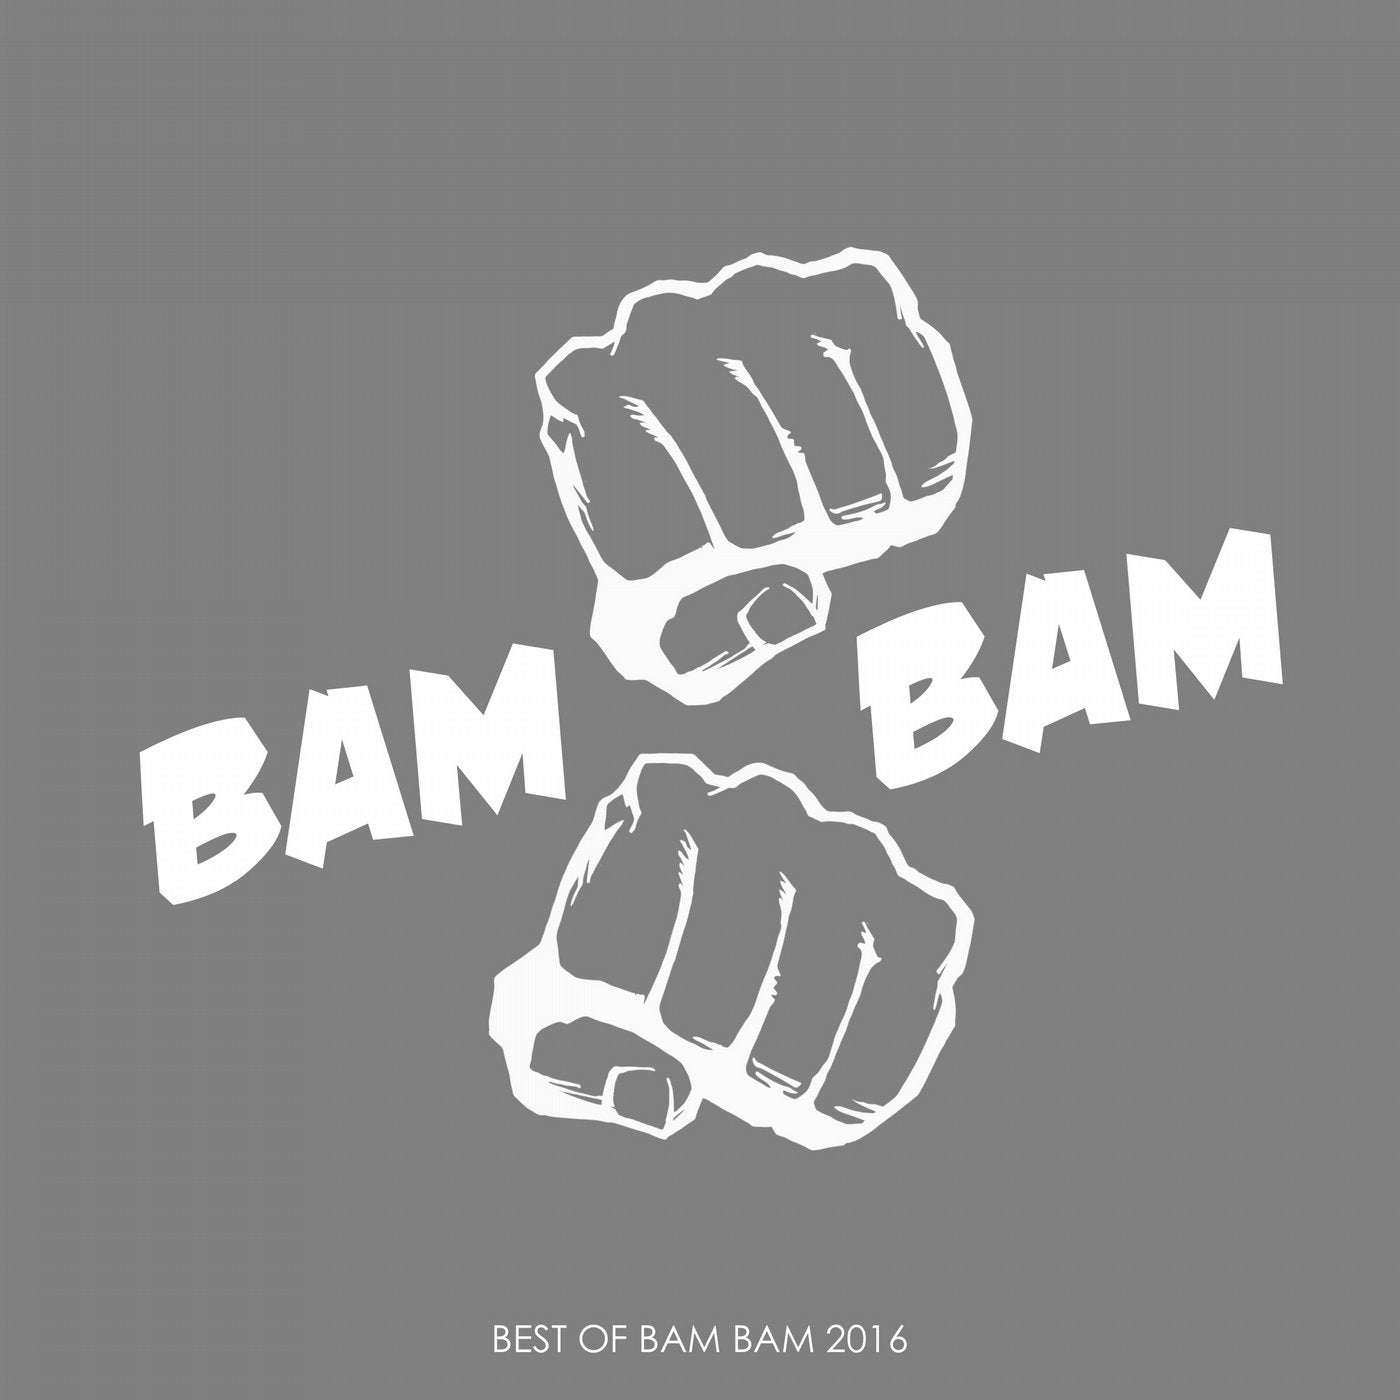 Best of BAM BAM 2016